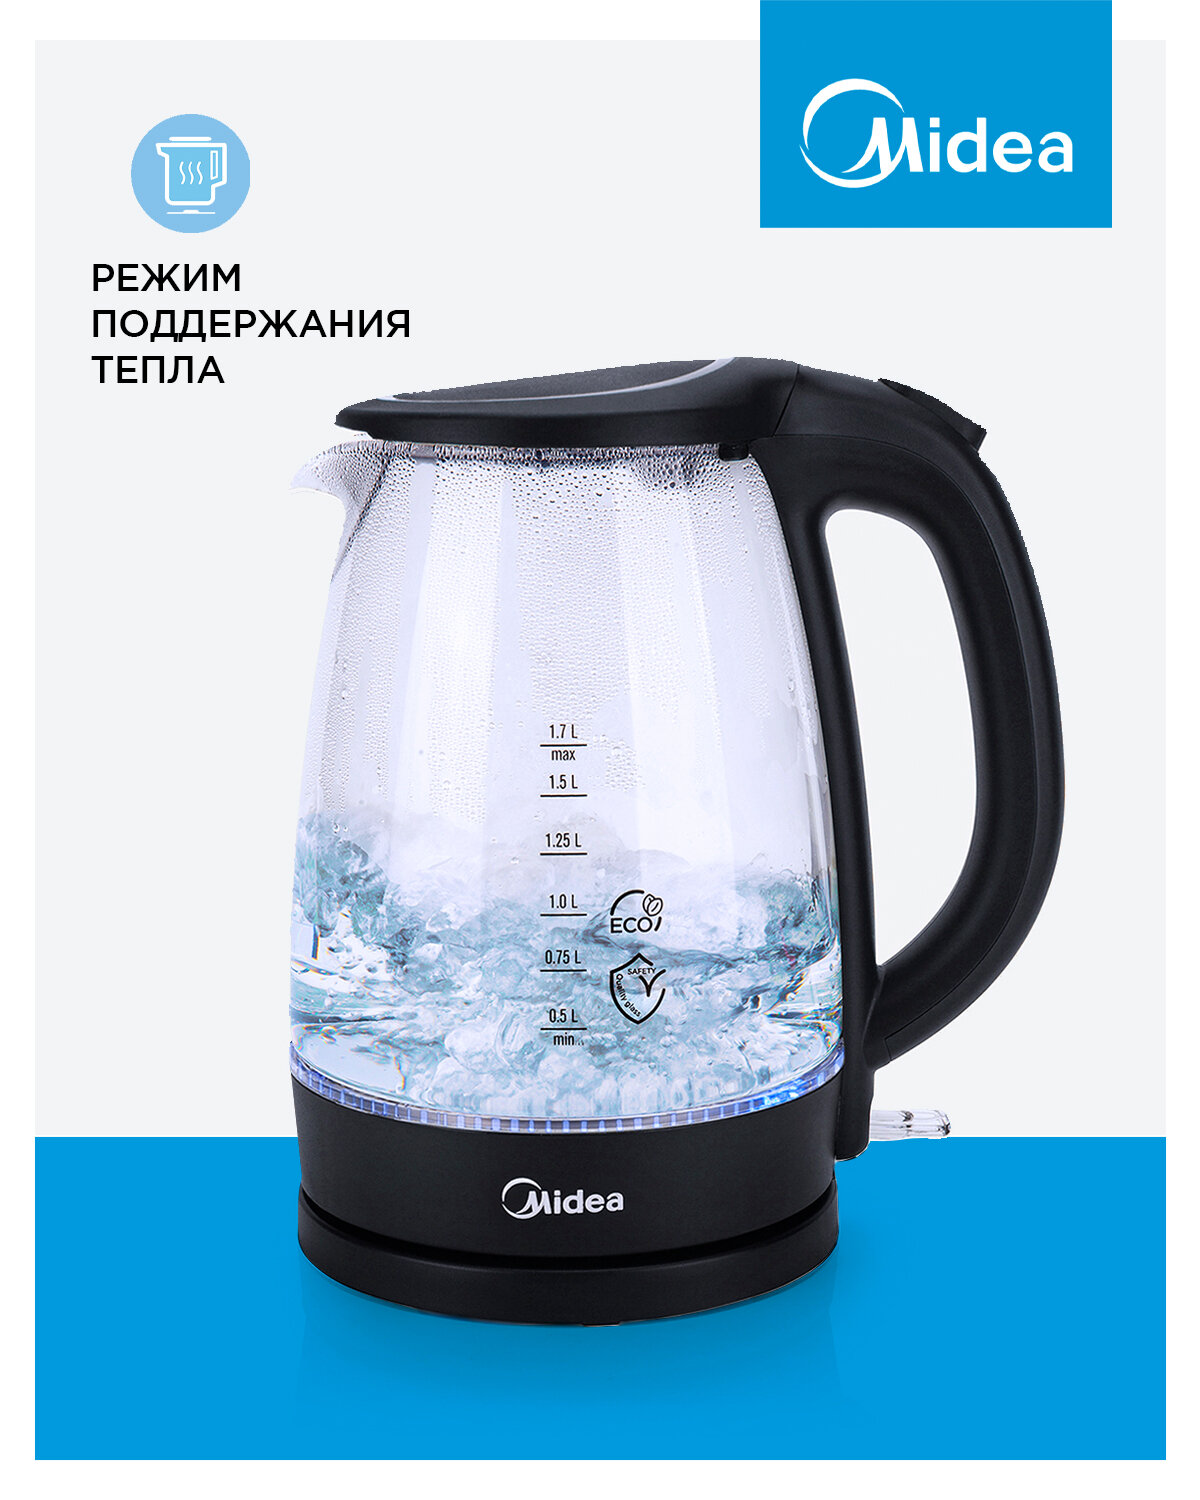 Электрический чайник Midea MK-8015, черный, 1,7 л